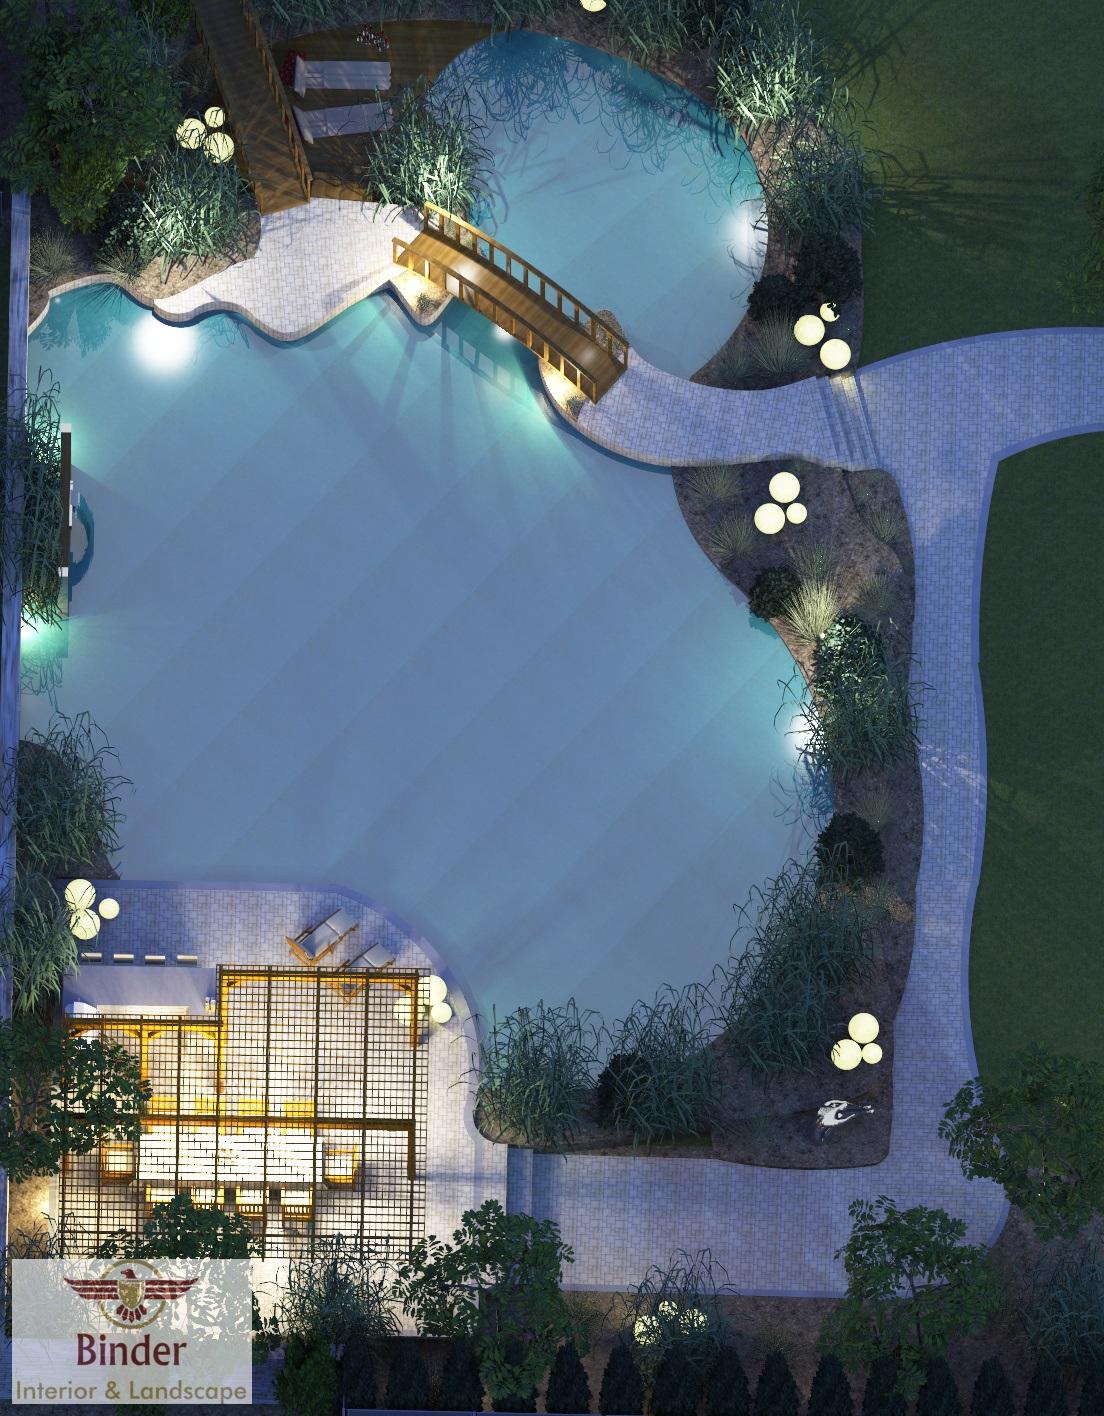 Schwimmteich im Garten - so kann ́s aussehen #pool #gartenteich #schwimmbad ©Binder Interior & Landscape